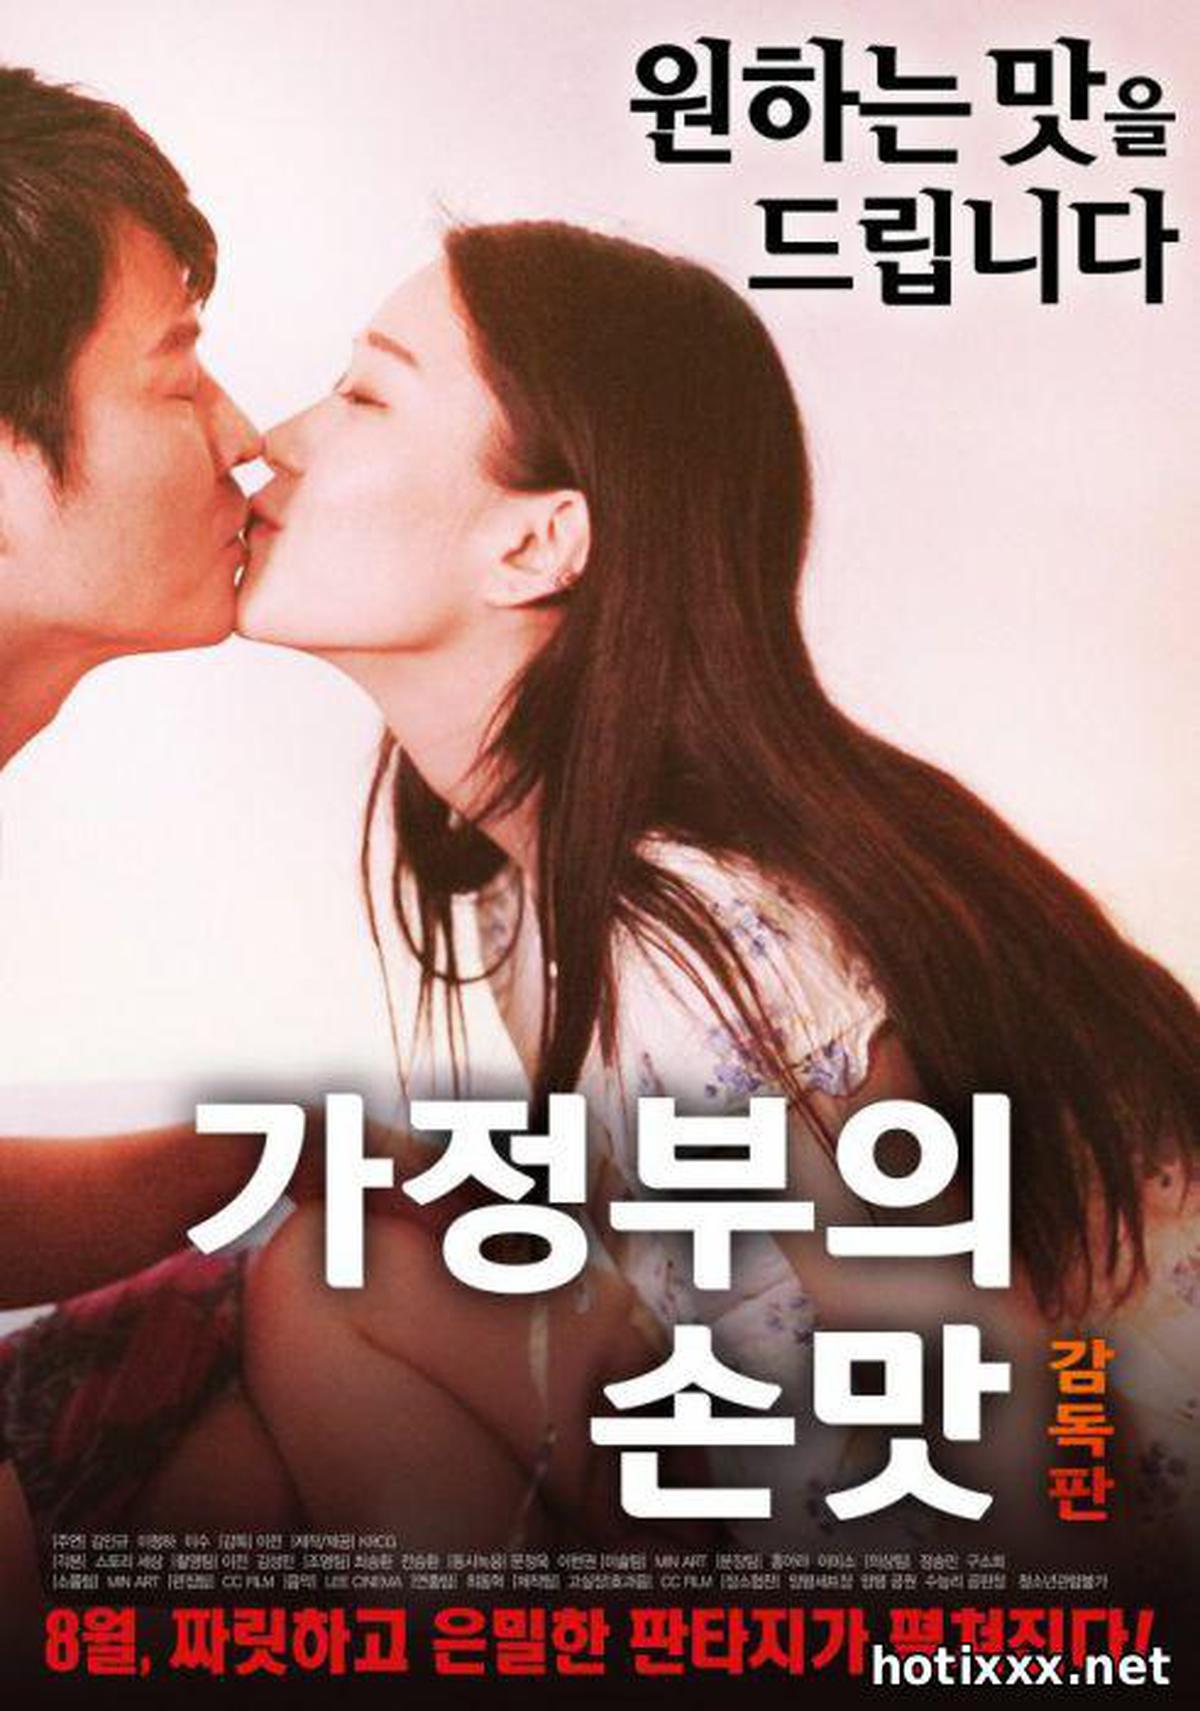 손맛 / ga-jeong-bu-eui son-mat gam-dok-pan / The Maid’s Comfort Food – Director’s Cut (2017)